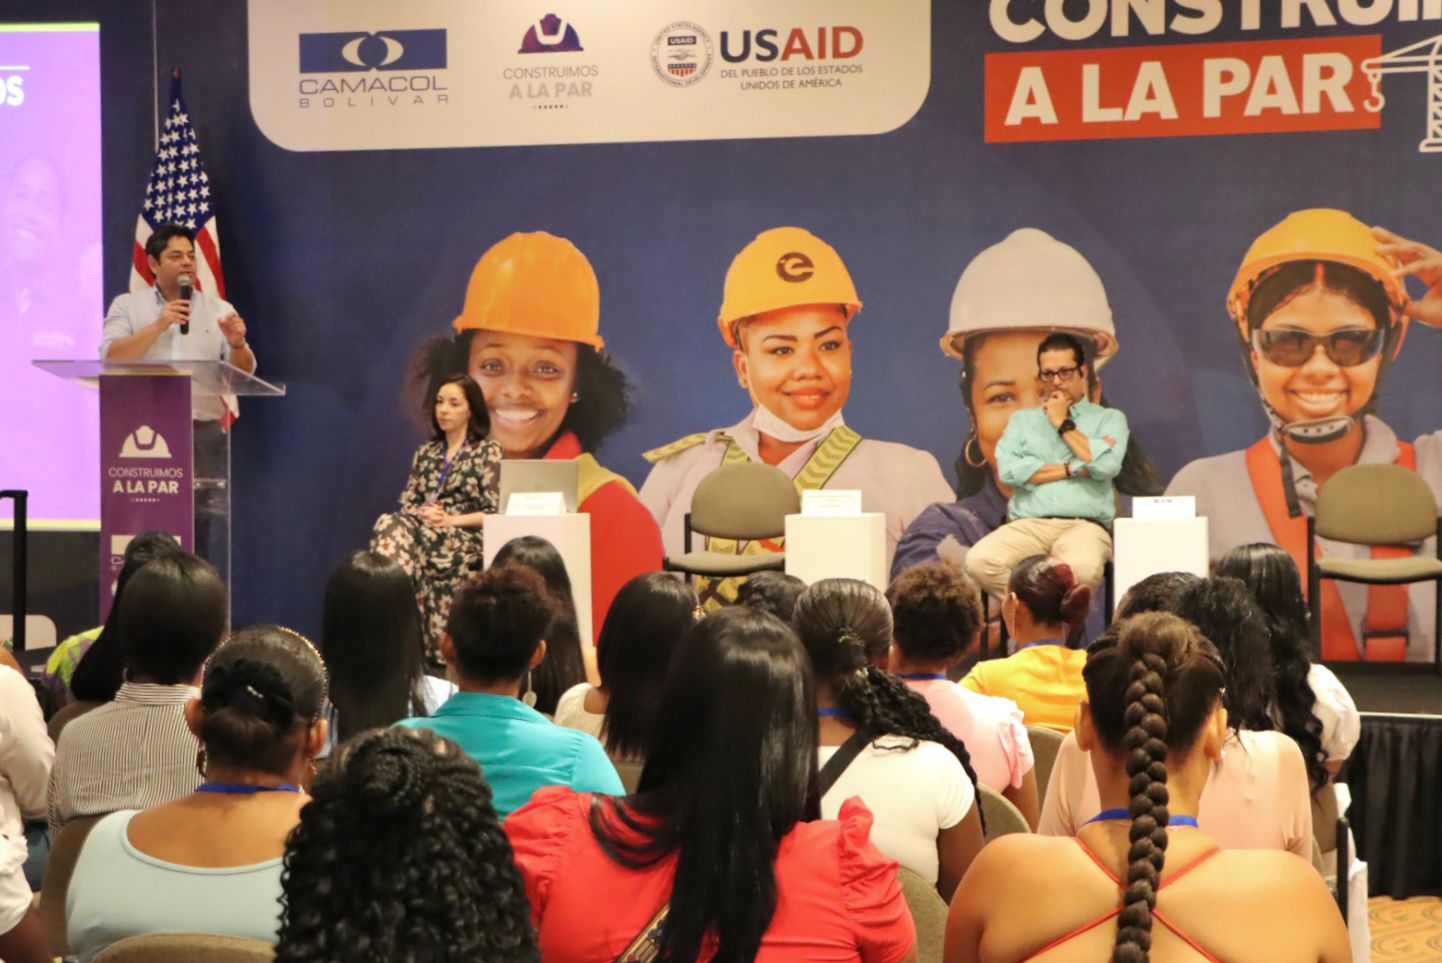 Camacol y USAID culminaron la primera fase de Construimos a la Par Cartagena y firmaron un segundo convenio